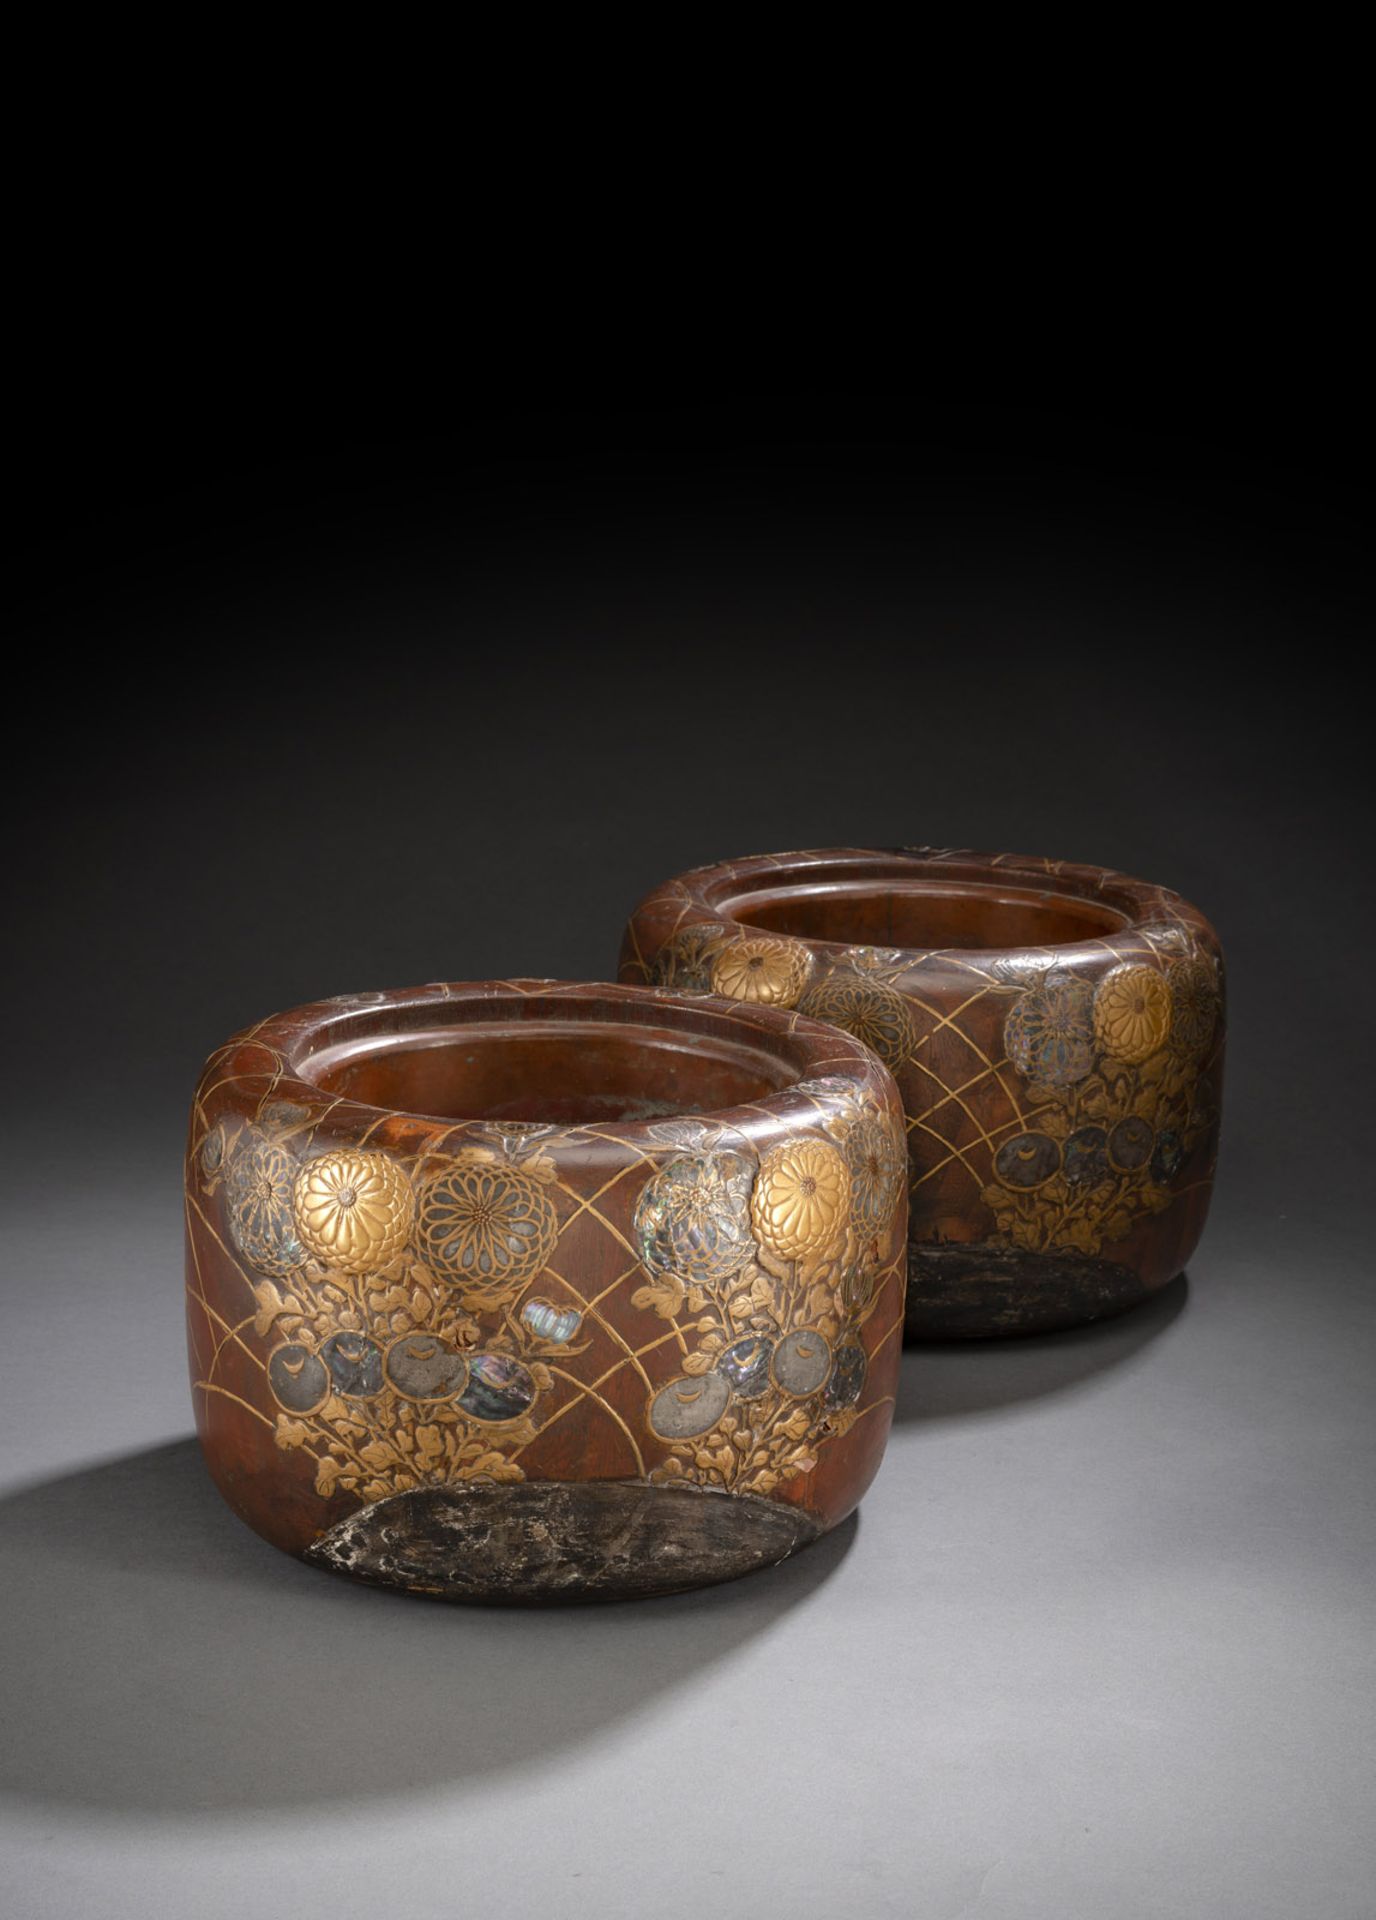 Paar Hibachi aus Holz mit feinem Goldlackdekor von Chrysanthemen, teils mit Aogai und Blei eingeleg - Bild 2 aus 6